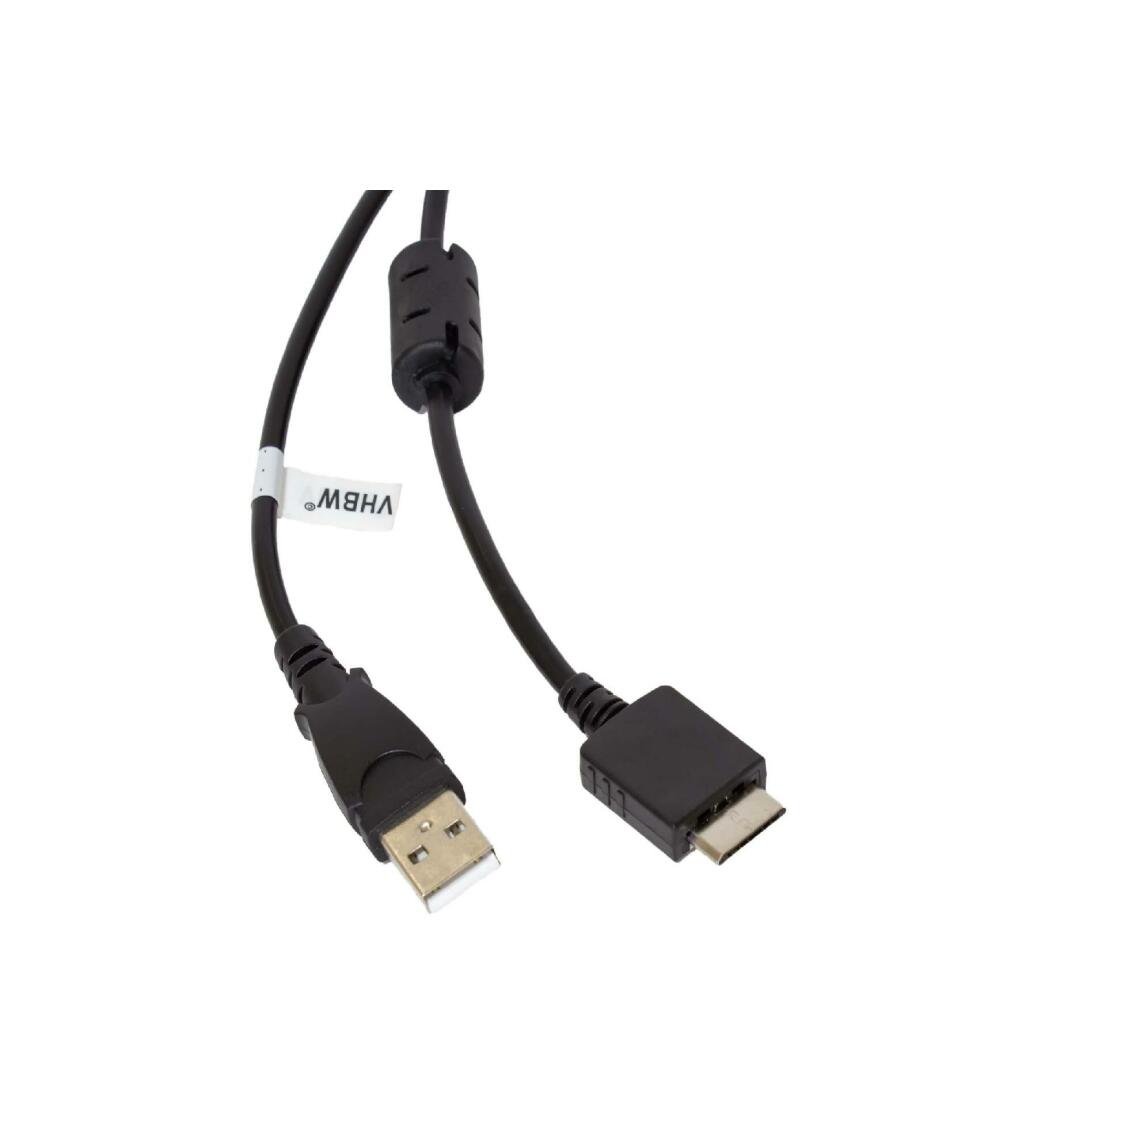 Vhbw - vhbw câble de données USB (type A sur lecteur MP3) câble de chargement compatible avec Sony Walkman NWZ-S516, NWZ-S610 lecteur MP3 - noir, 150cm - Alimentation modulaire